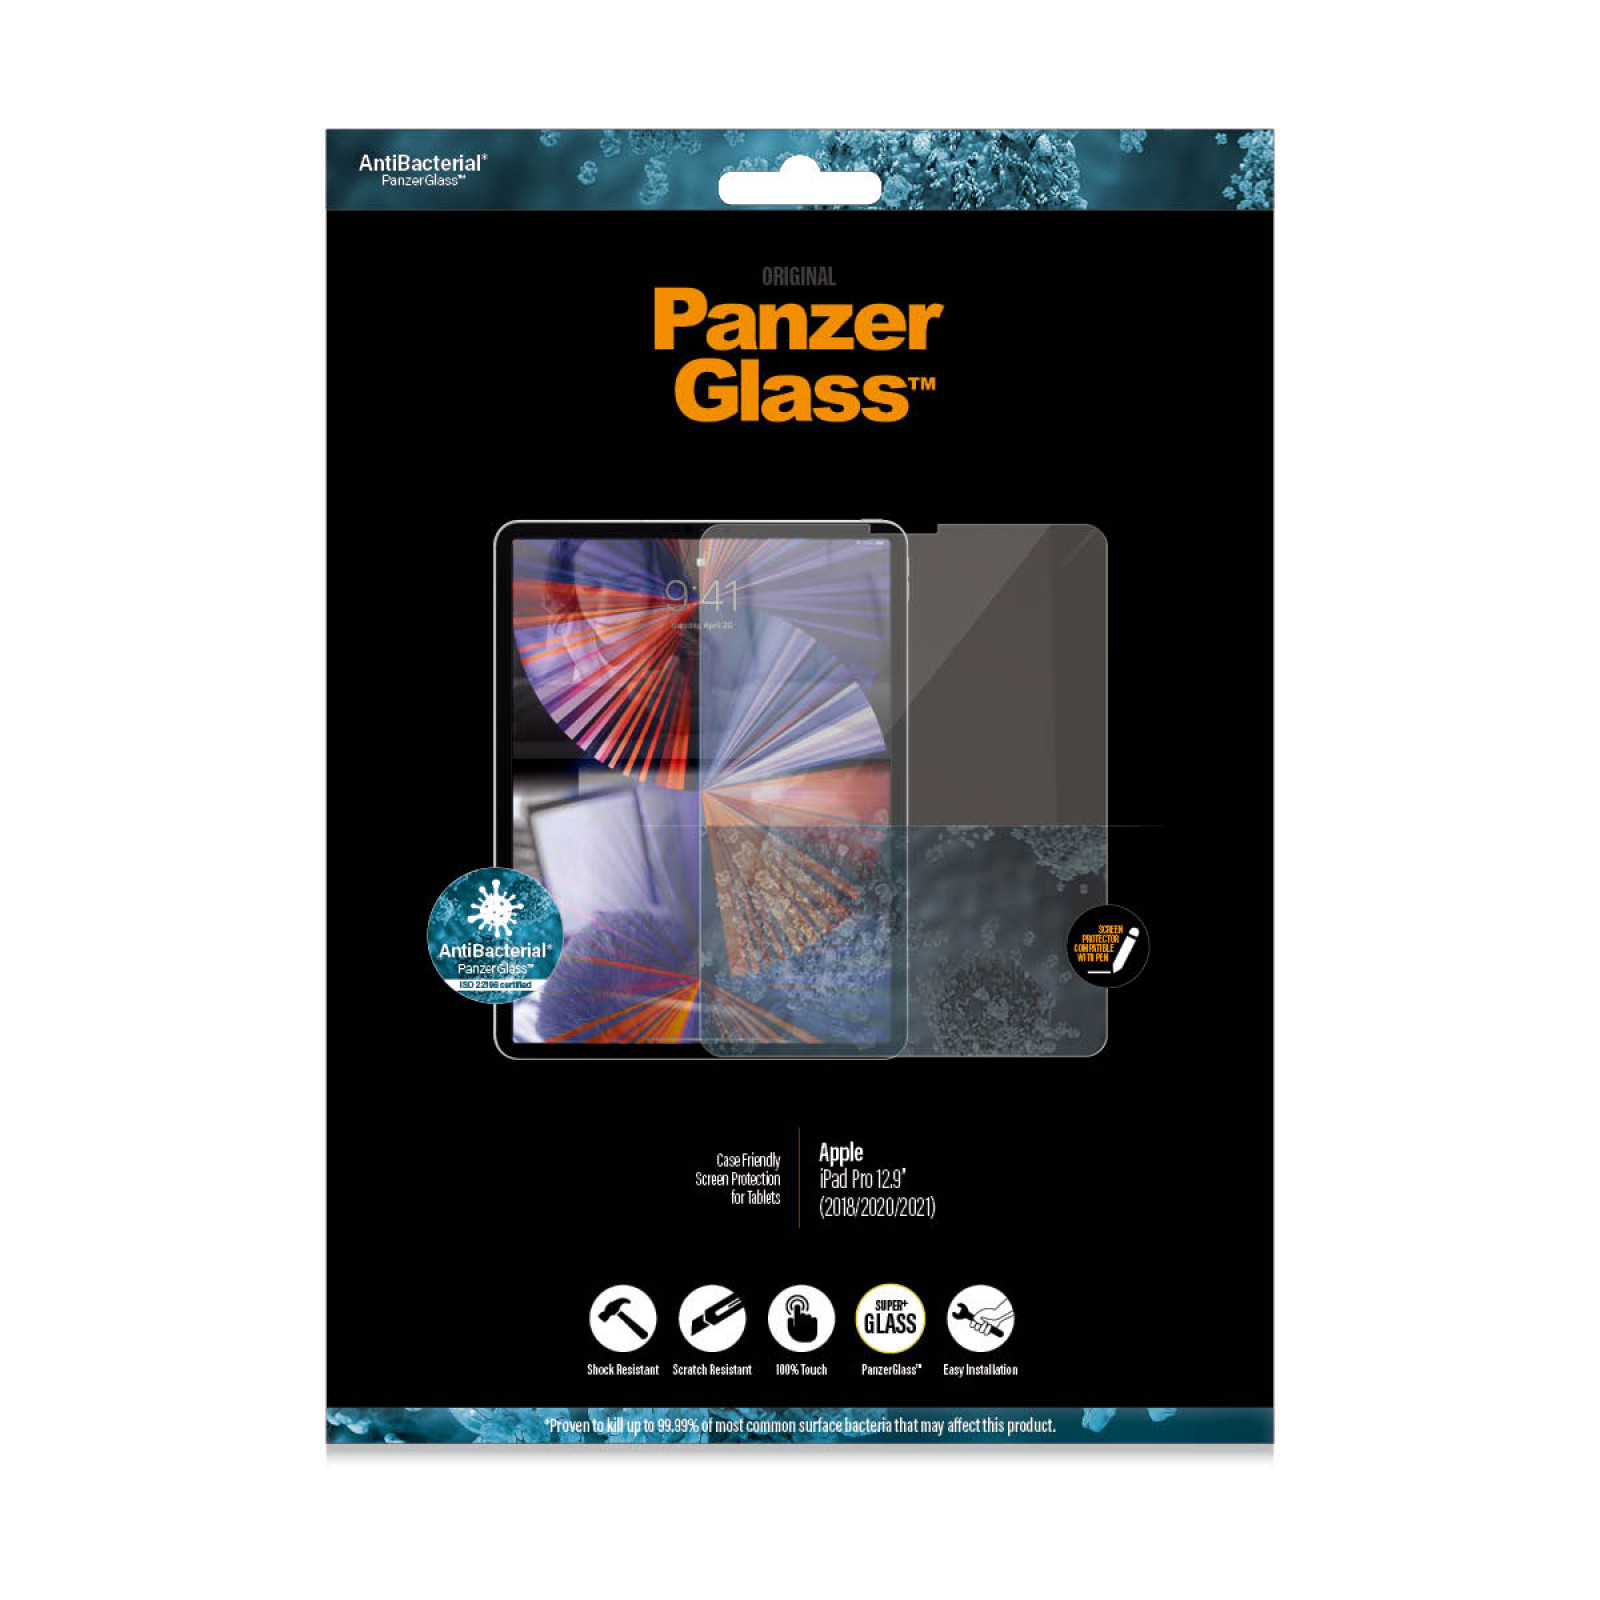 Стъклен протектор PanzerGlass за Apple Ipad Pro 12.9 ( 2018/20/21/22), Antibacterial - Черен